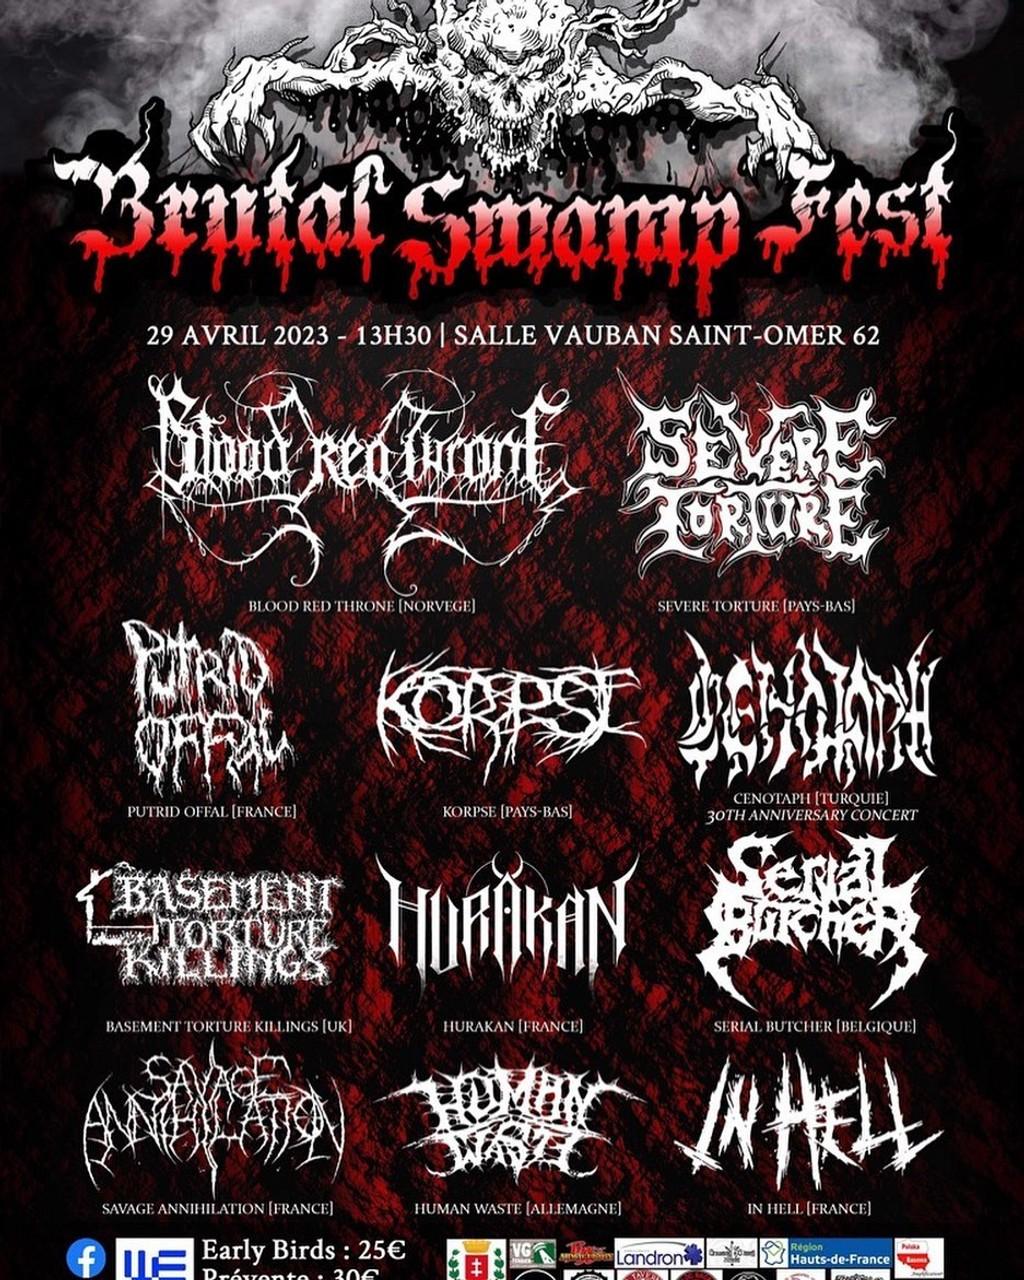 Lineup Poster Brutal Swamp Fest 2023